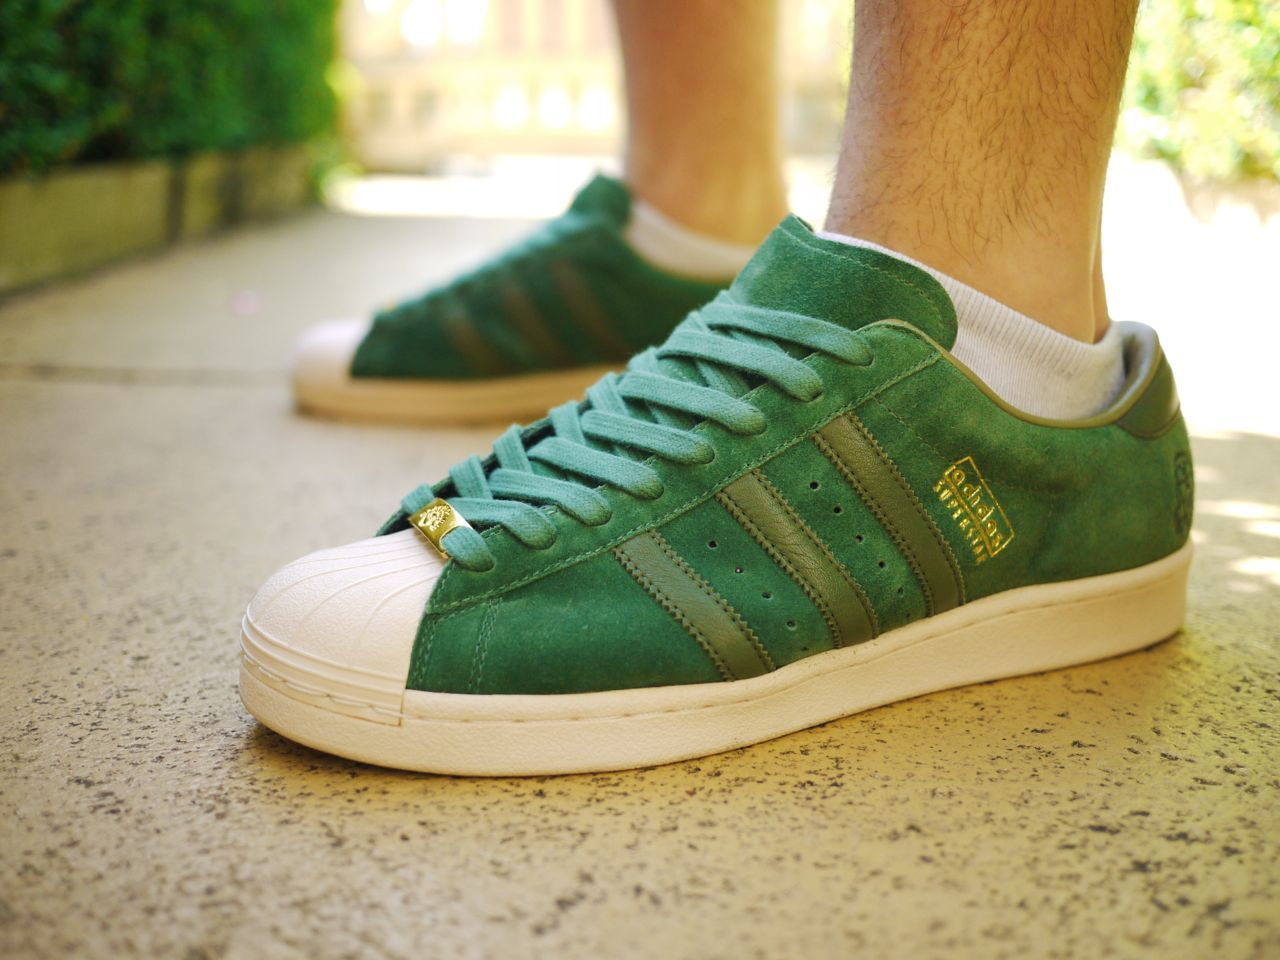 Зеленые кроссовки adidas. Кеды adidas Superstar зеленые. Адидас суперстар зеленые. Adidas Footpatrol. Adidas / кроссовки Superstar Green.